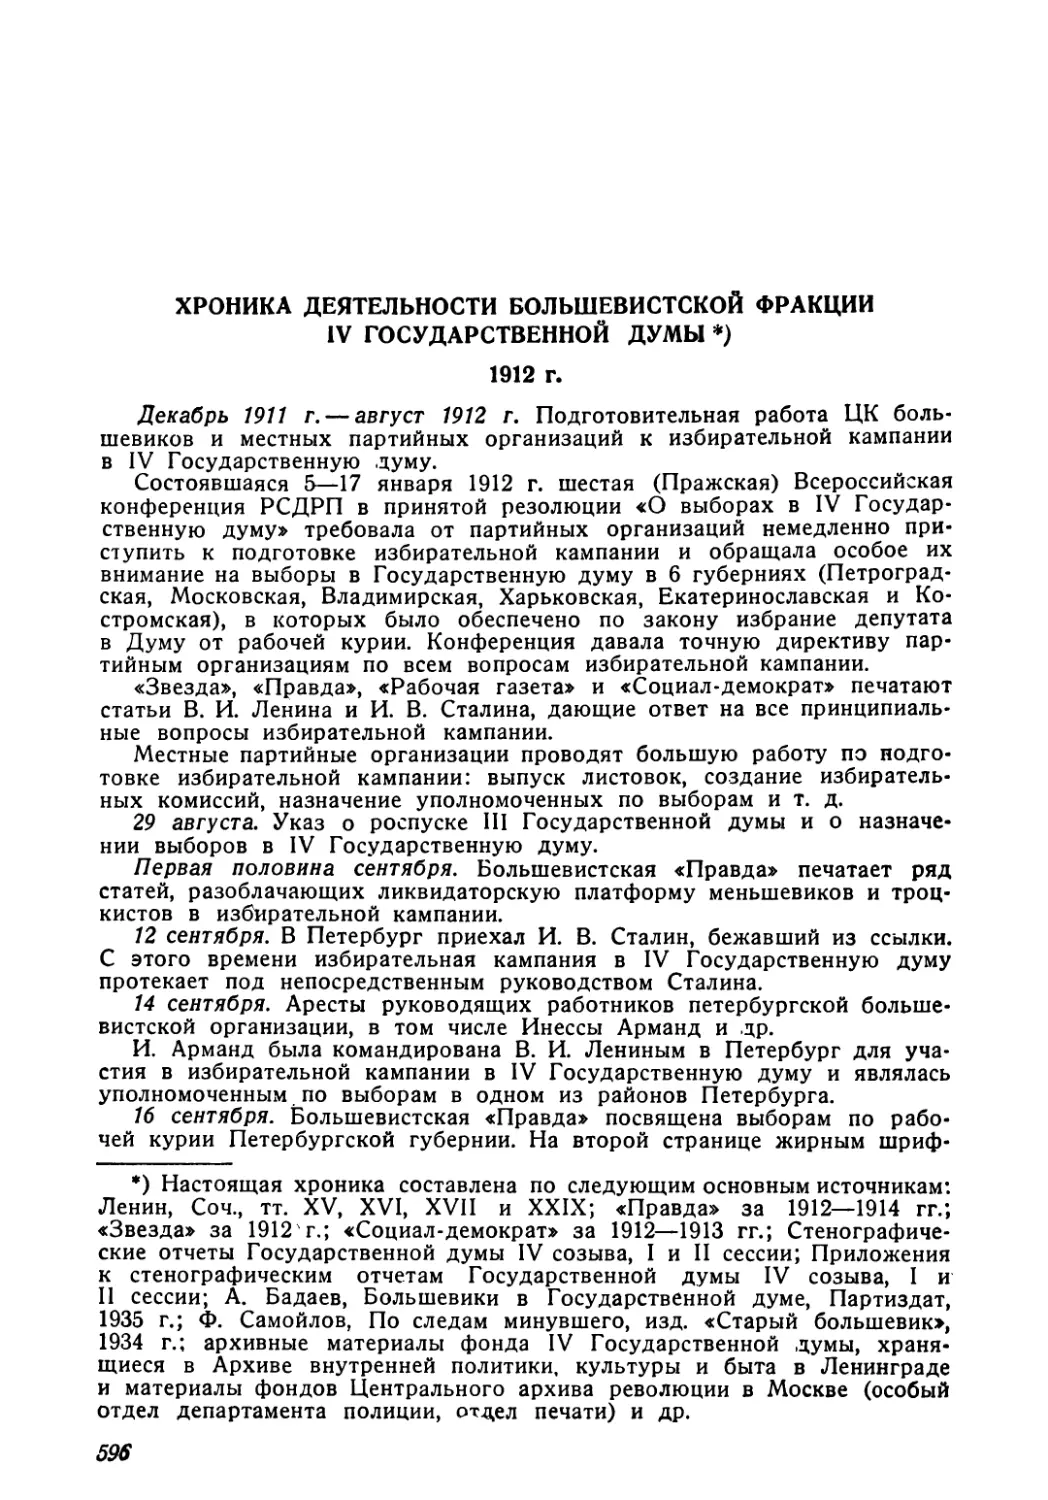 Хроника деятельности большевистской фракции IV Государственной думы